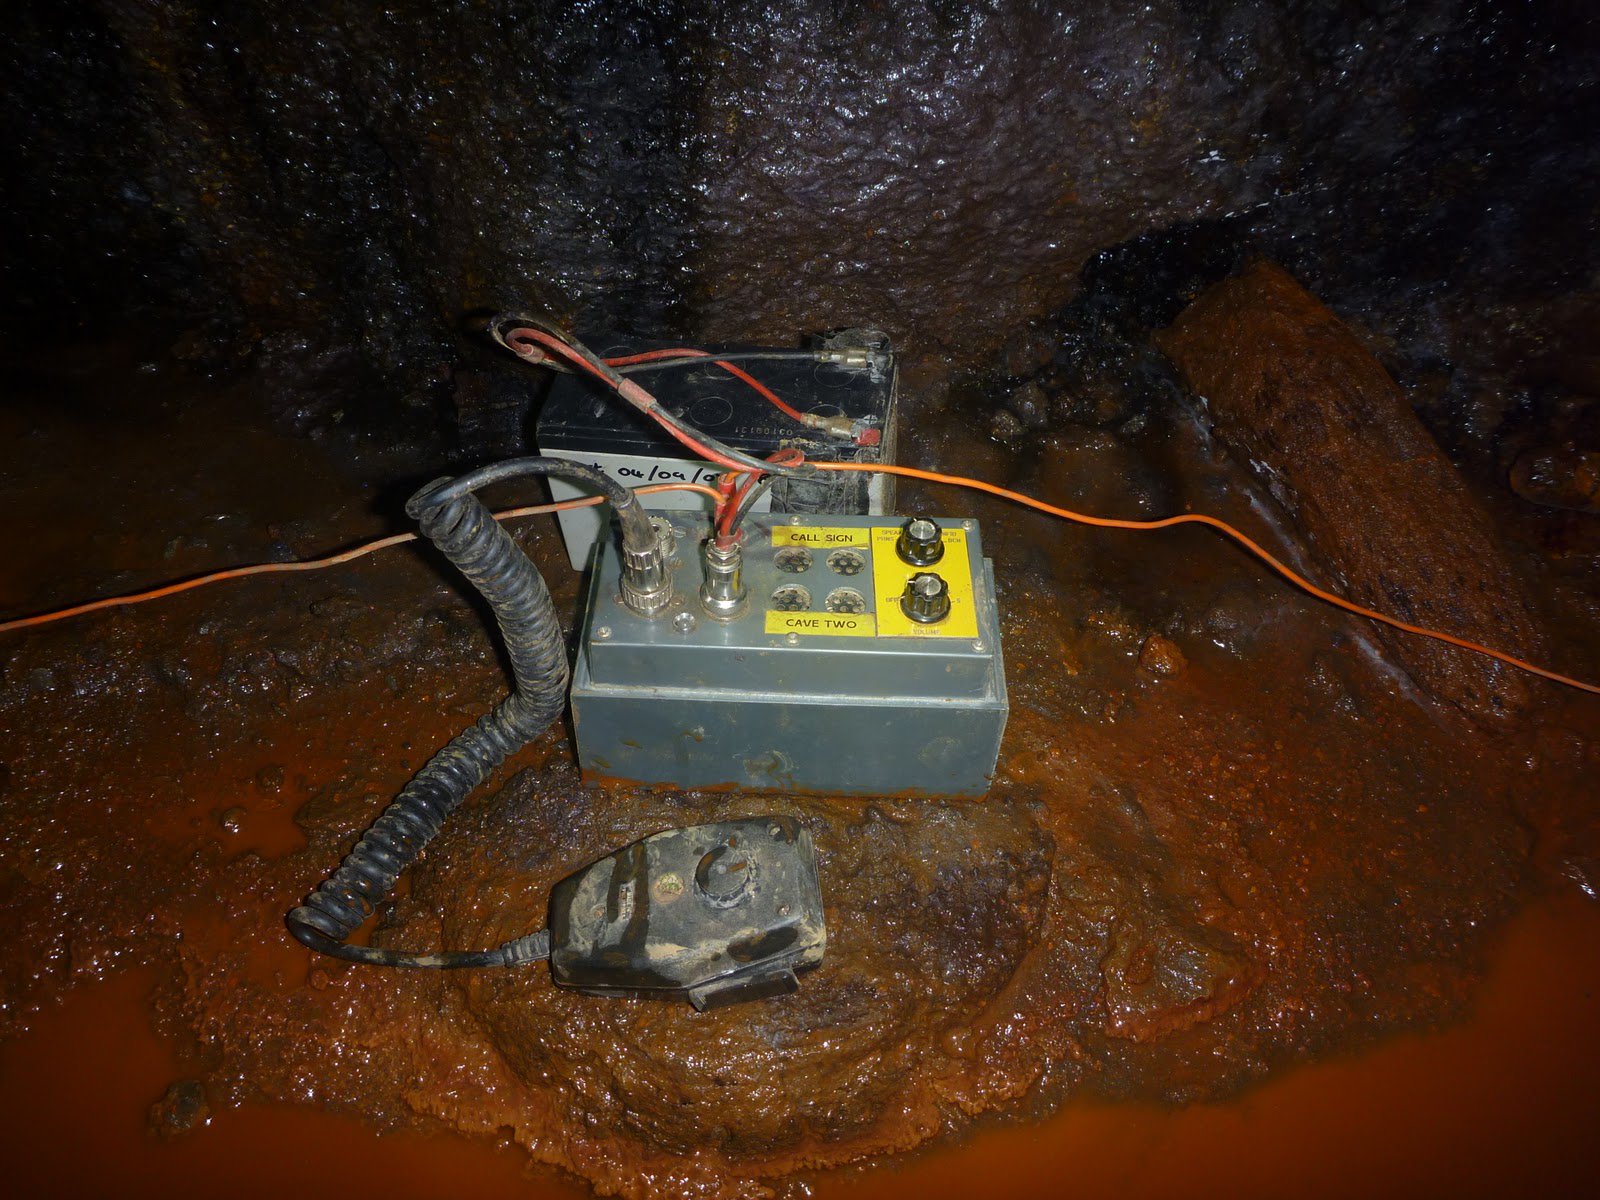 Baht los equipos de rescate utilizaron la radio Heyphone desarrollado радиолюбителем en el año 2001